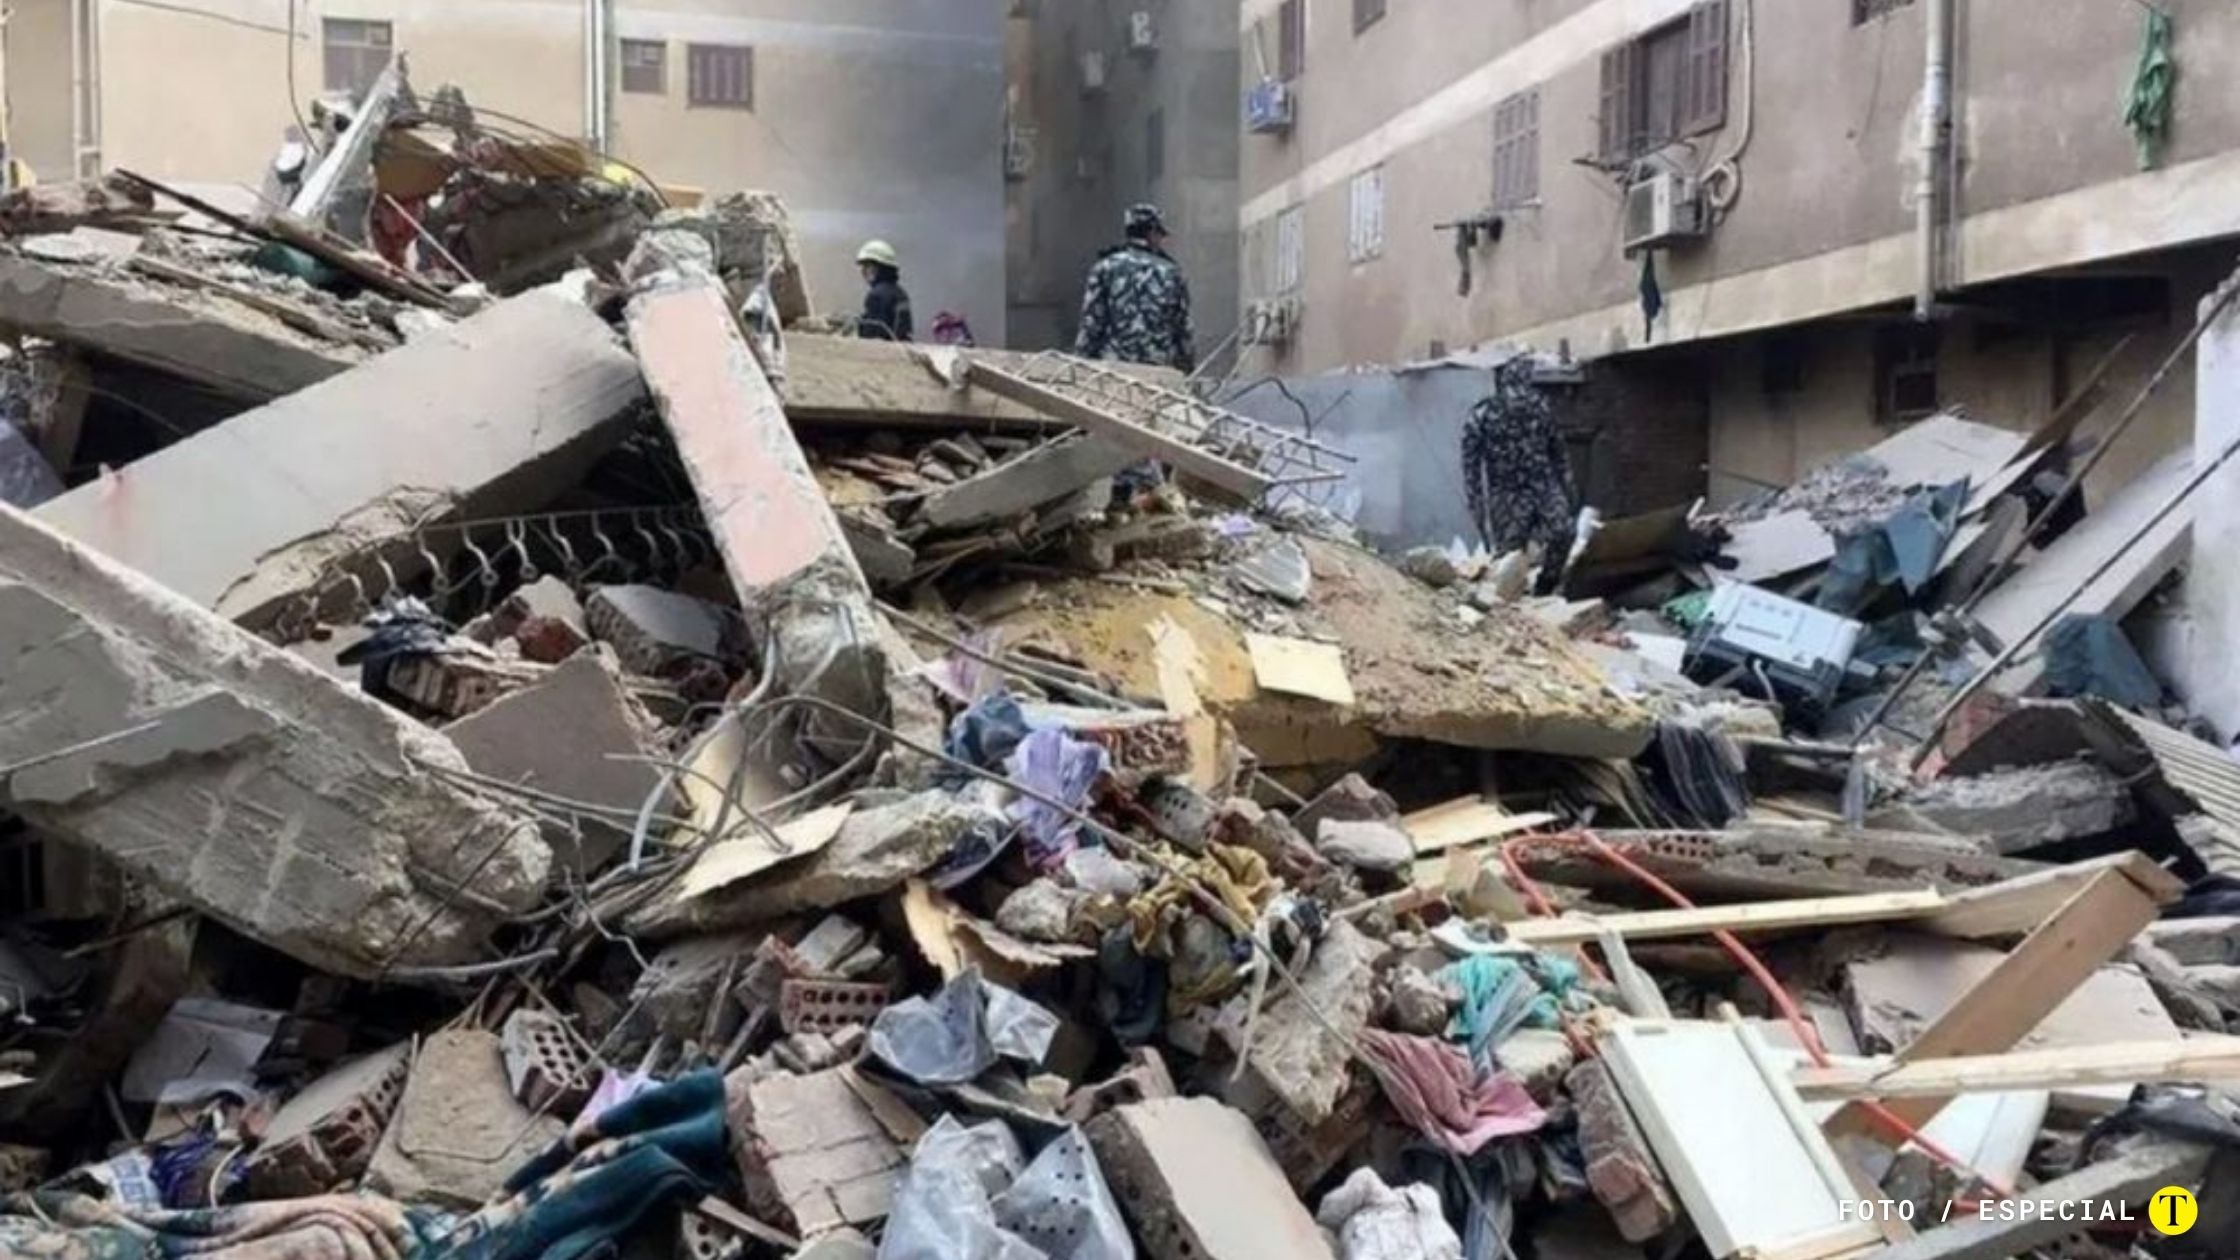 Cuatro mujeres murieron al derrumbarse un edificio residencial en el centro de Alejandría, Egipto, informó el sábado un representante de las fuerzas de seguridad. También, cuatro personas pudieron ser rescatadas con vida.